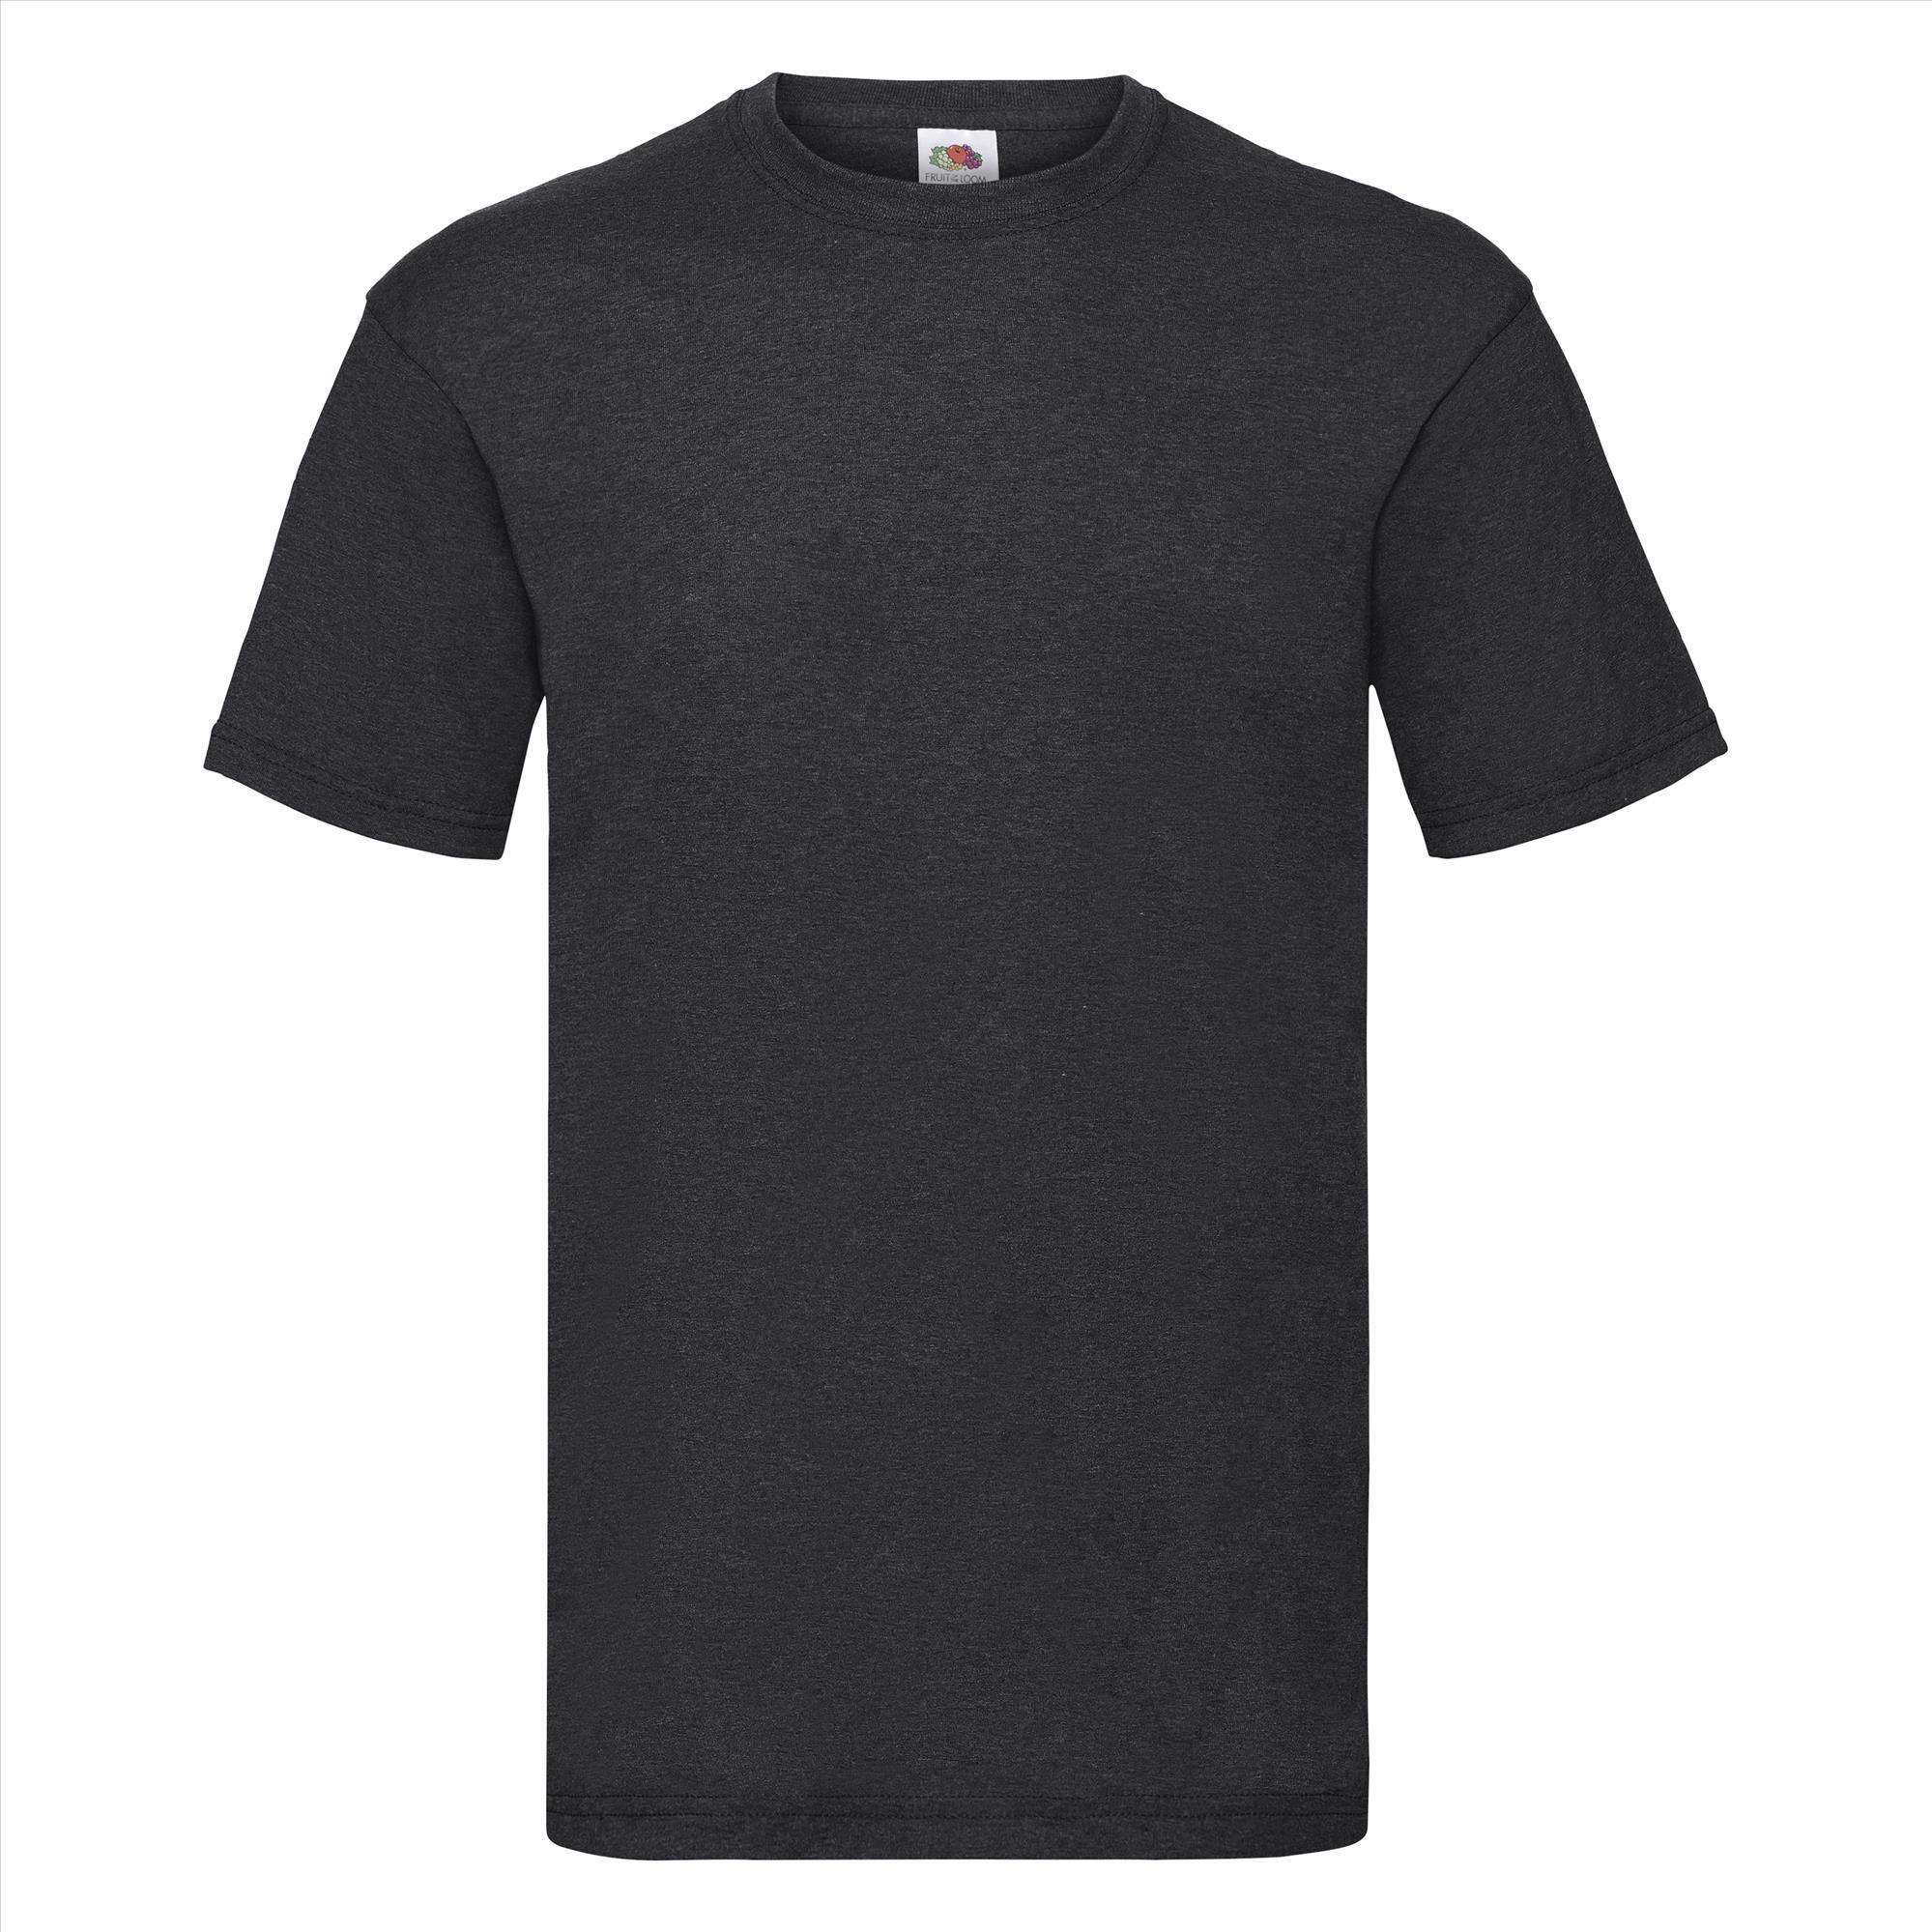 T-shirt voor mannen donker gemêleerd grijs personaliseren T-shirt bedrukken